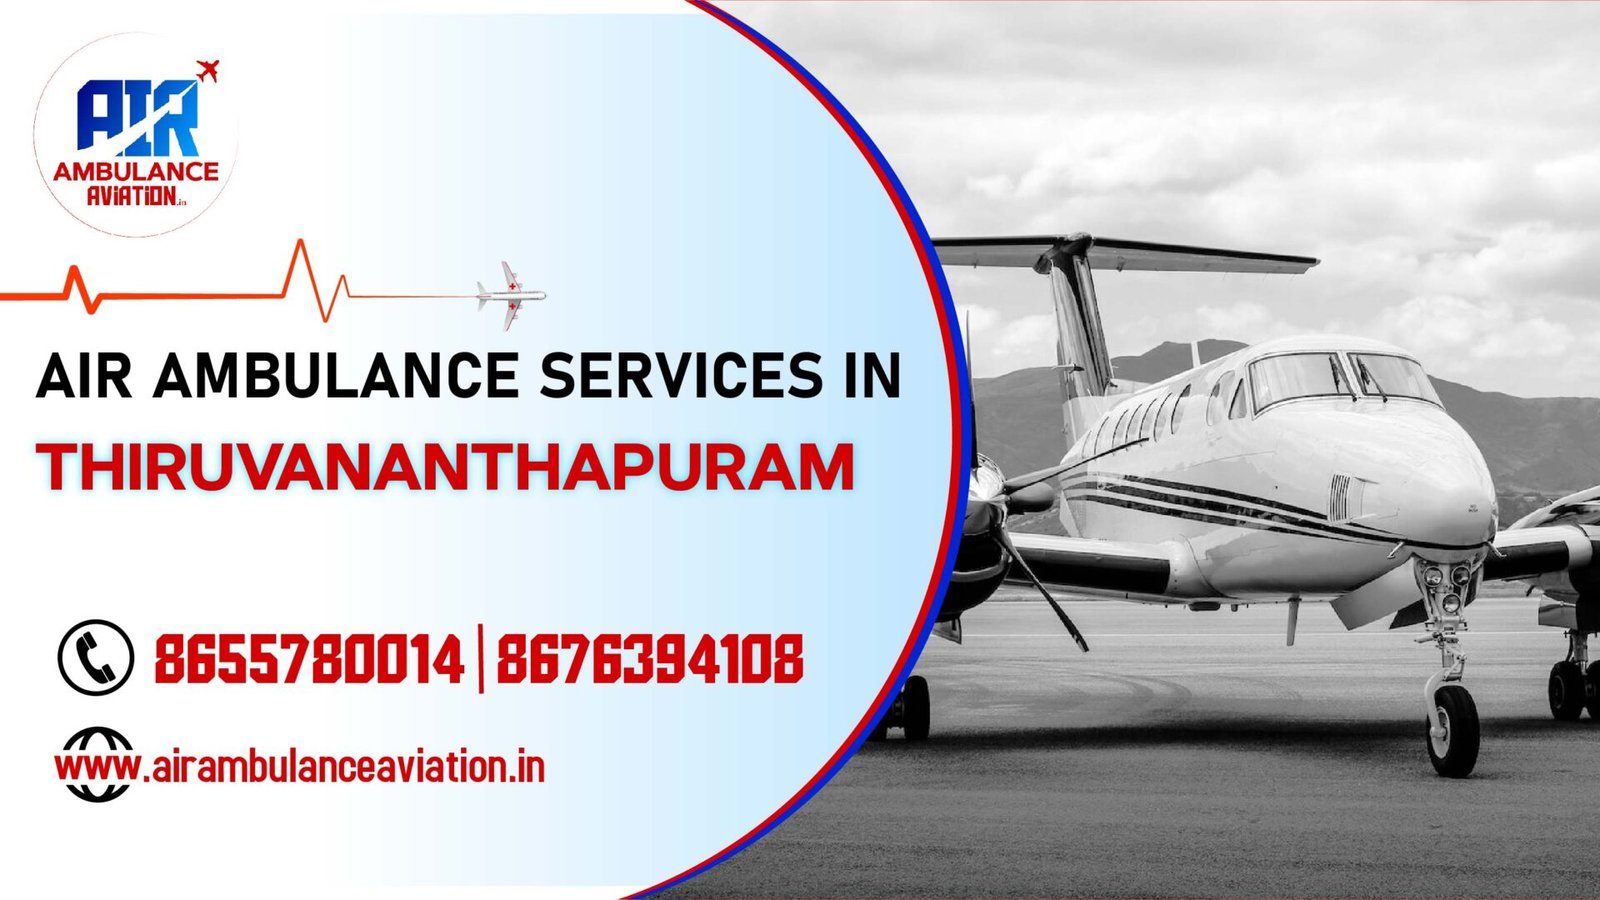 Air Ambulance services in Thiruvananthapuram